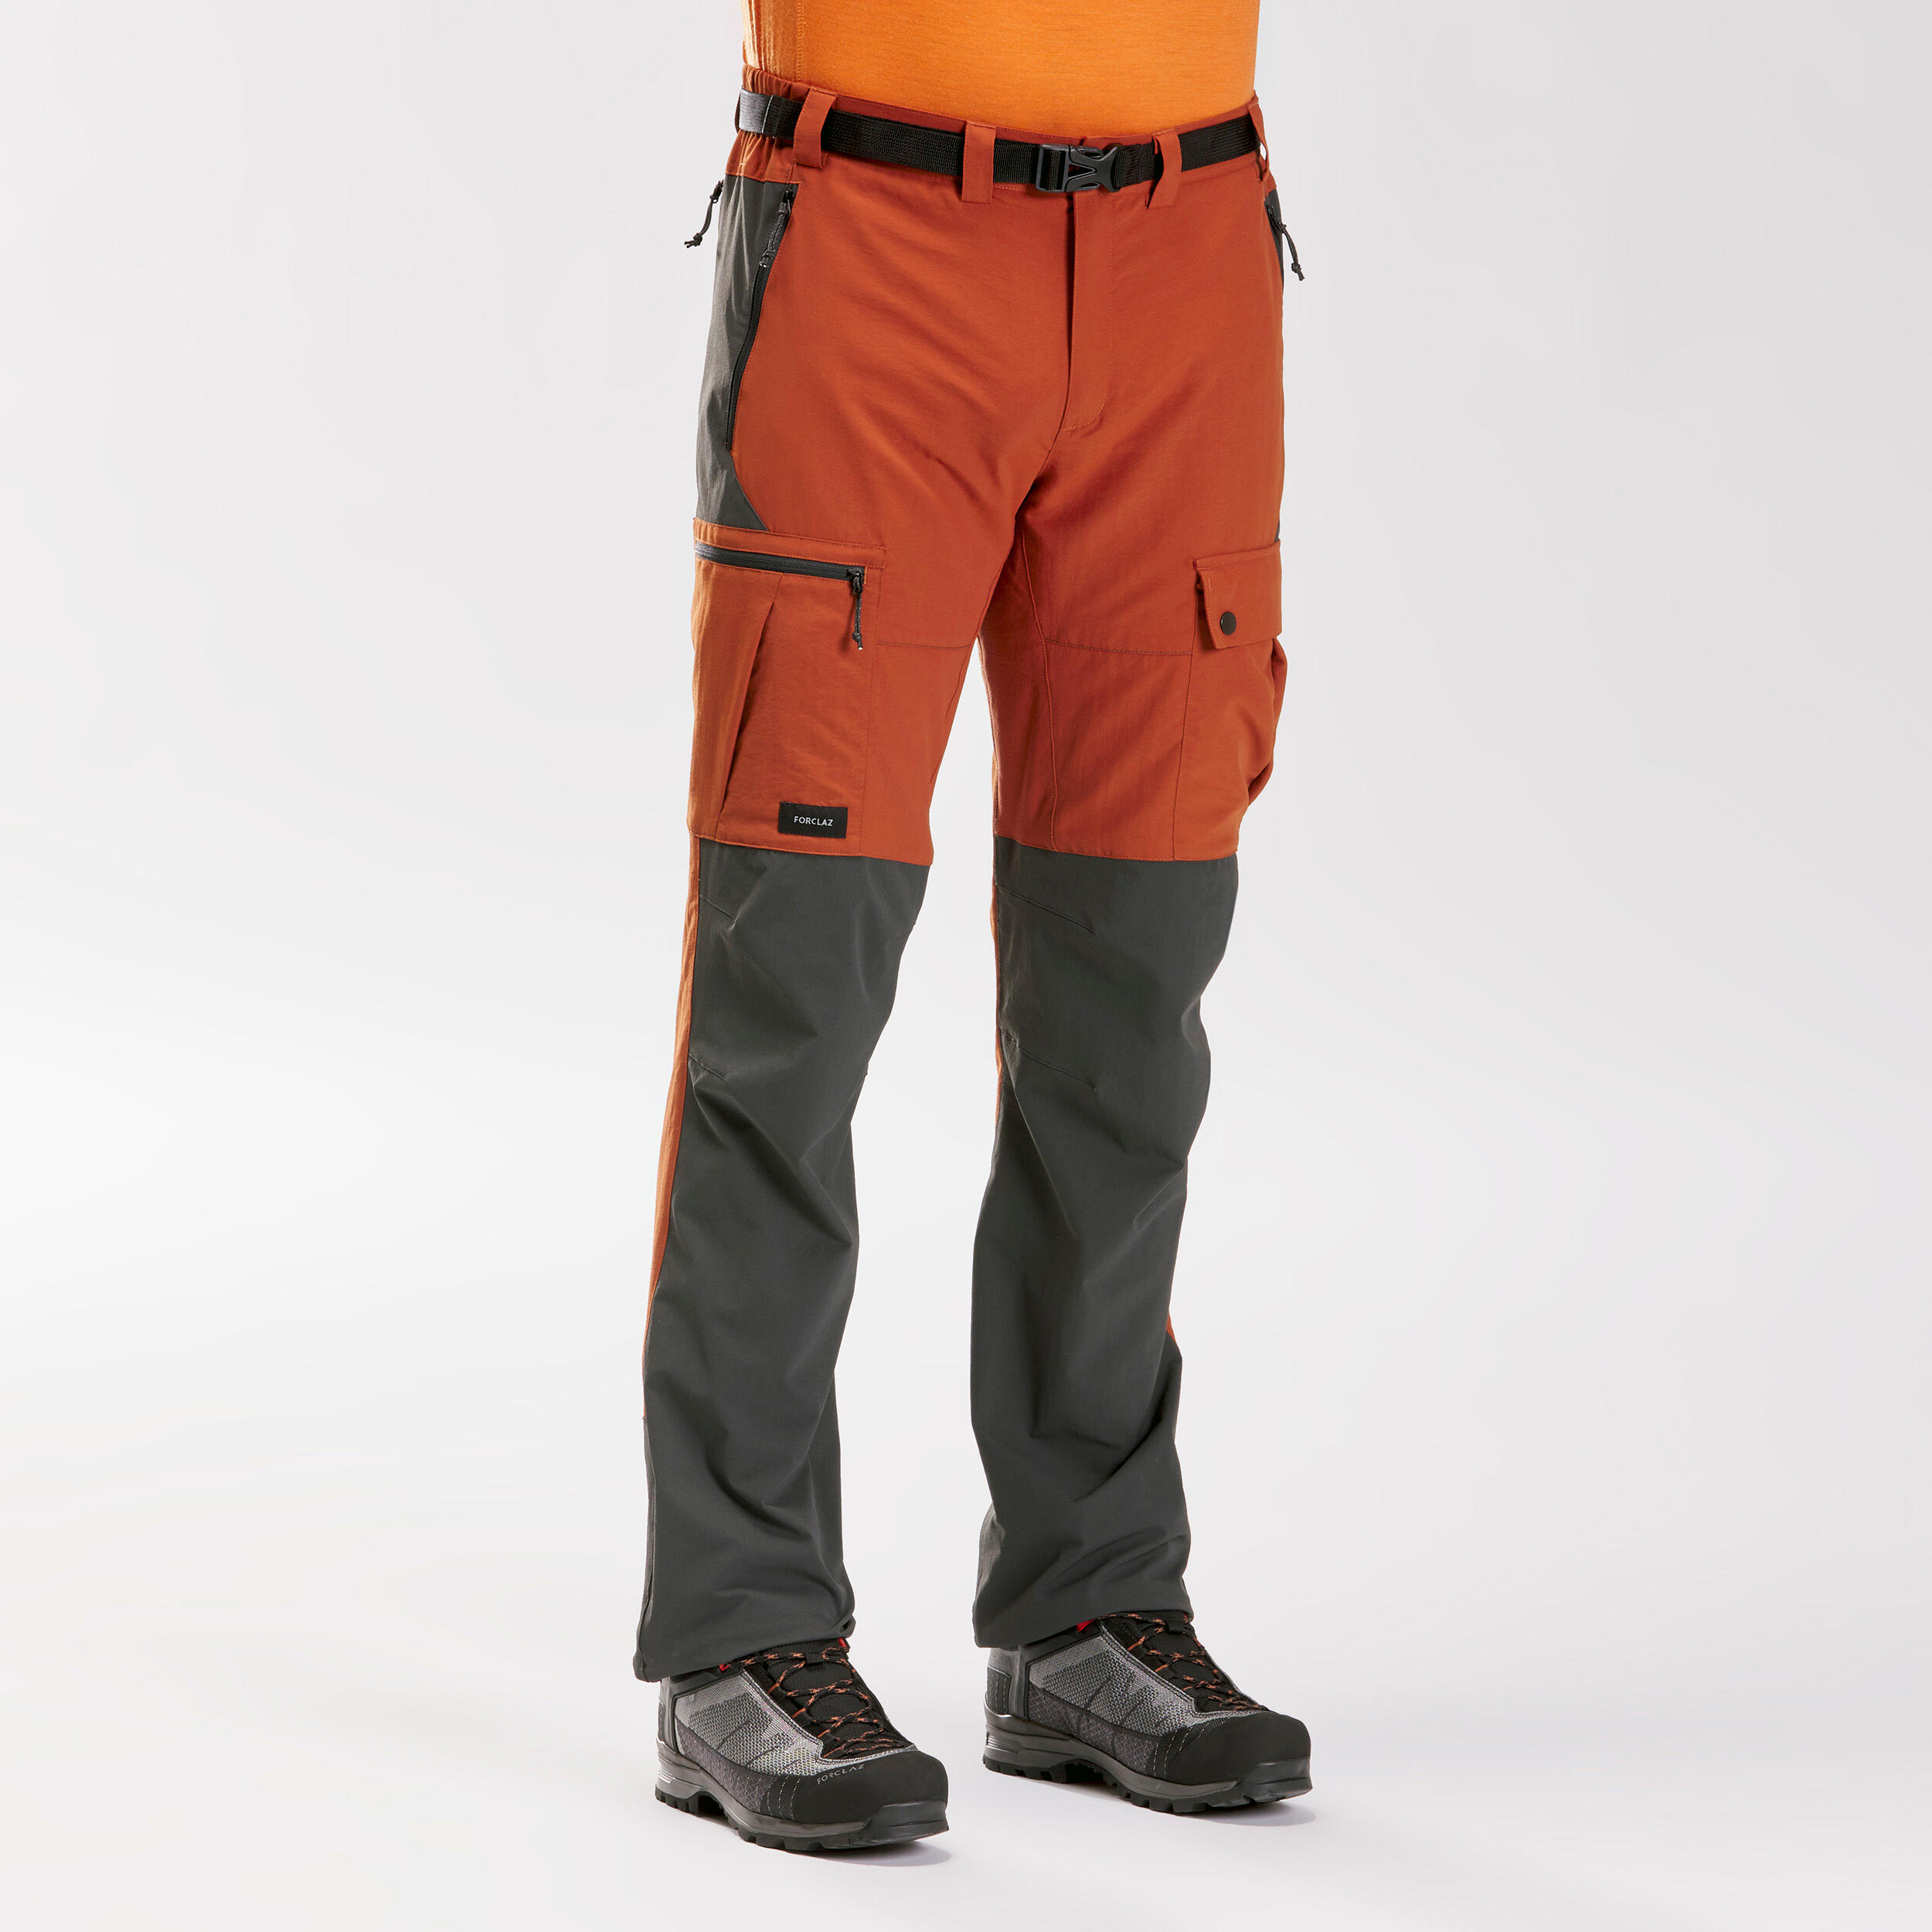 Pantalón Desmontable para Hombre Decathlon Forclaz 2564854 Talla UK40 EU48  (G34) Gris